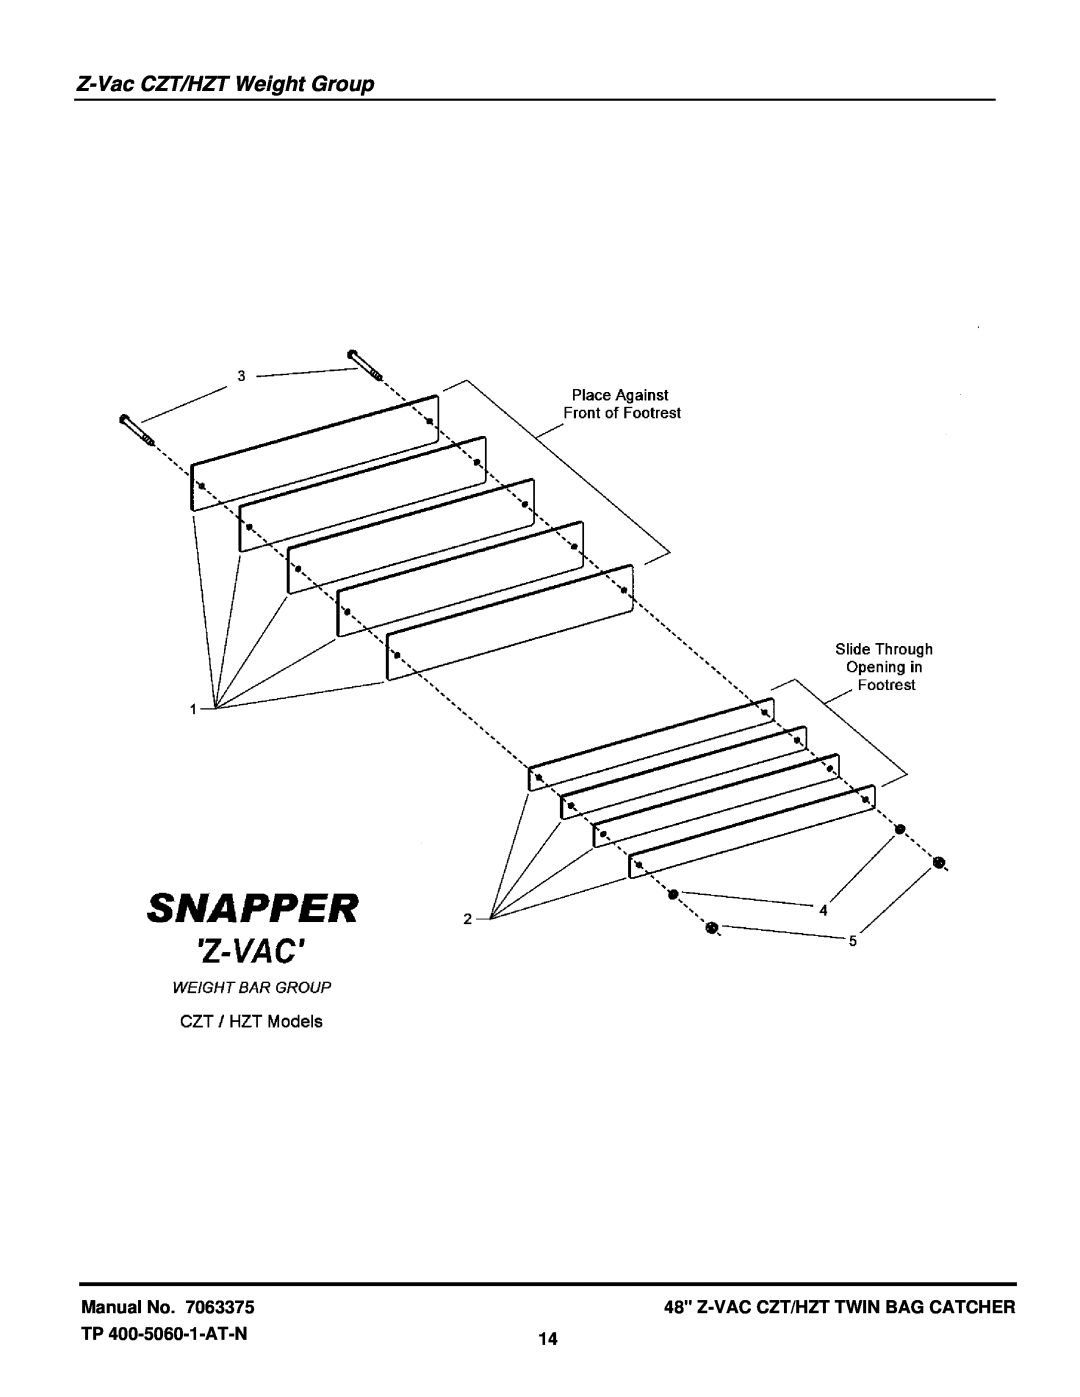 Snapper 7063375 manual Z-Vac CZT/HZT Weight Group, Manual No, Z-Vac Czt/Hzt Twin Bag Catcher, TP 400-5060-1-AT-N 